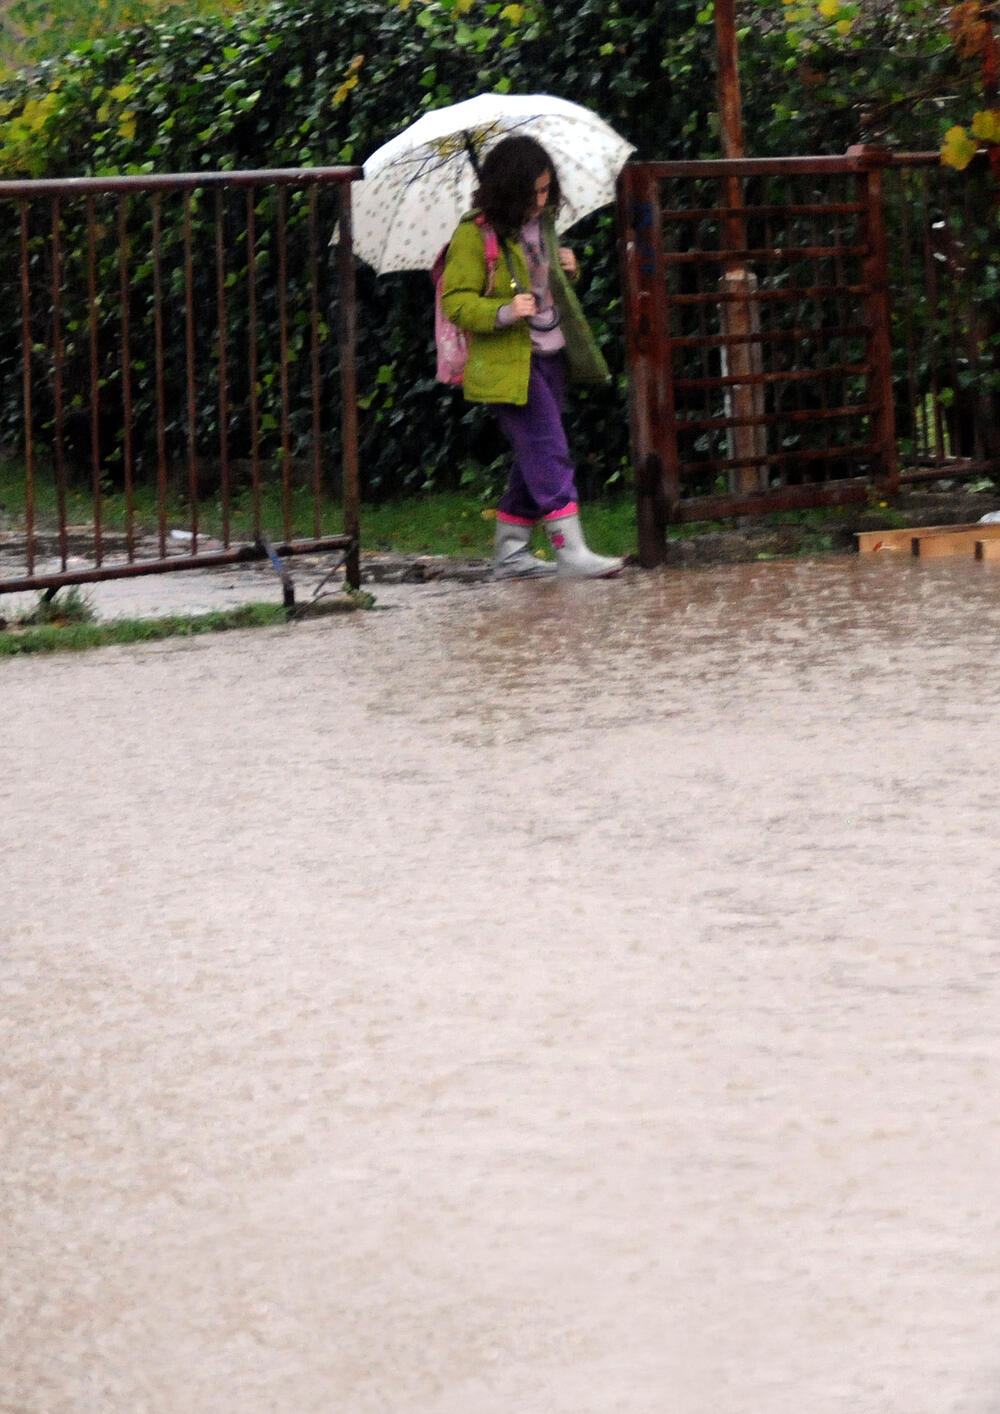 Podgorica poplave